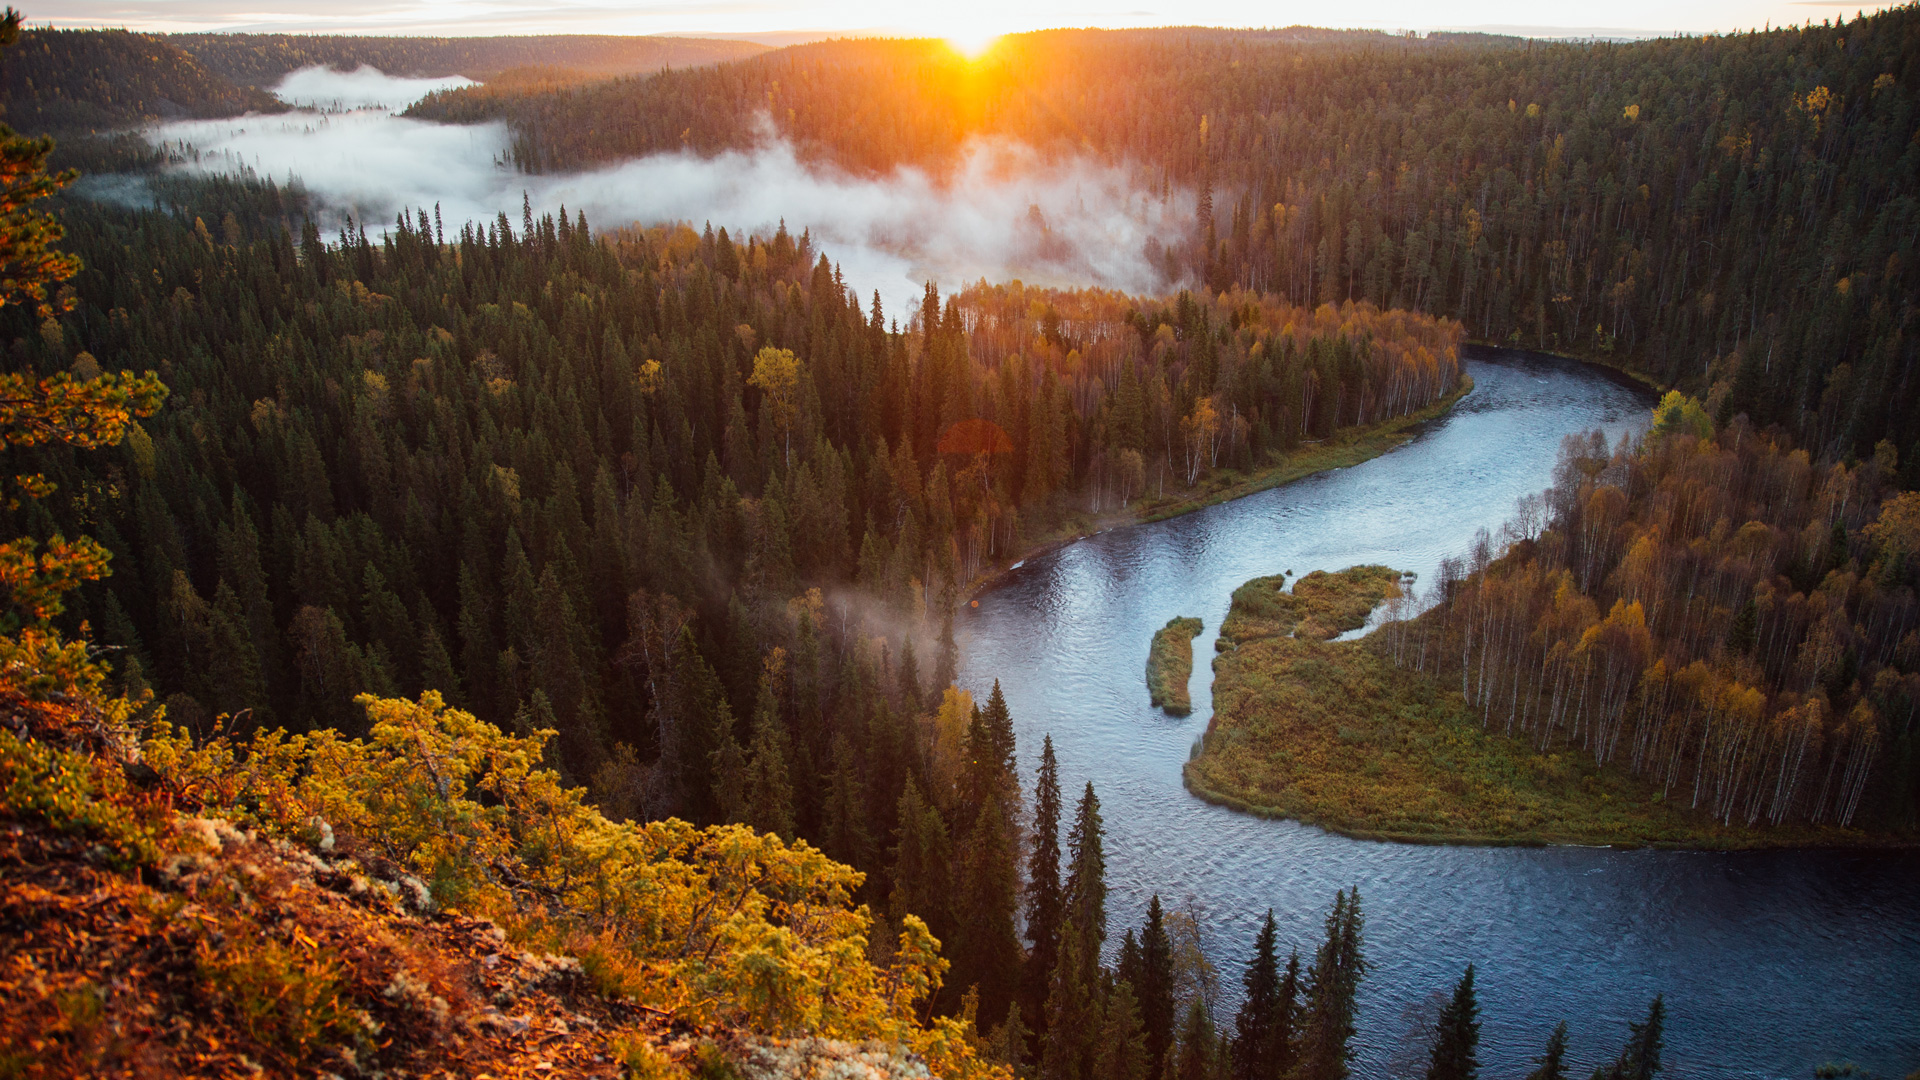 Visit unique nature destinations in Finnish Lapland | Visit Finnish Lapland